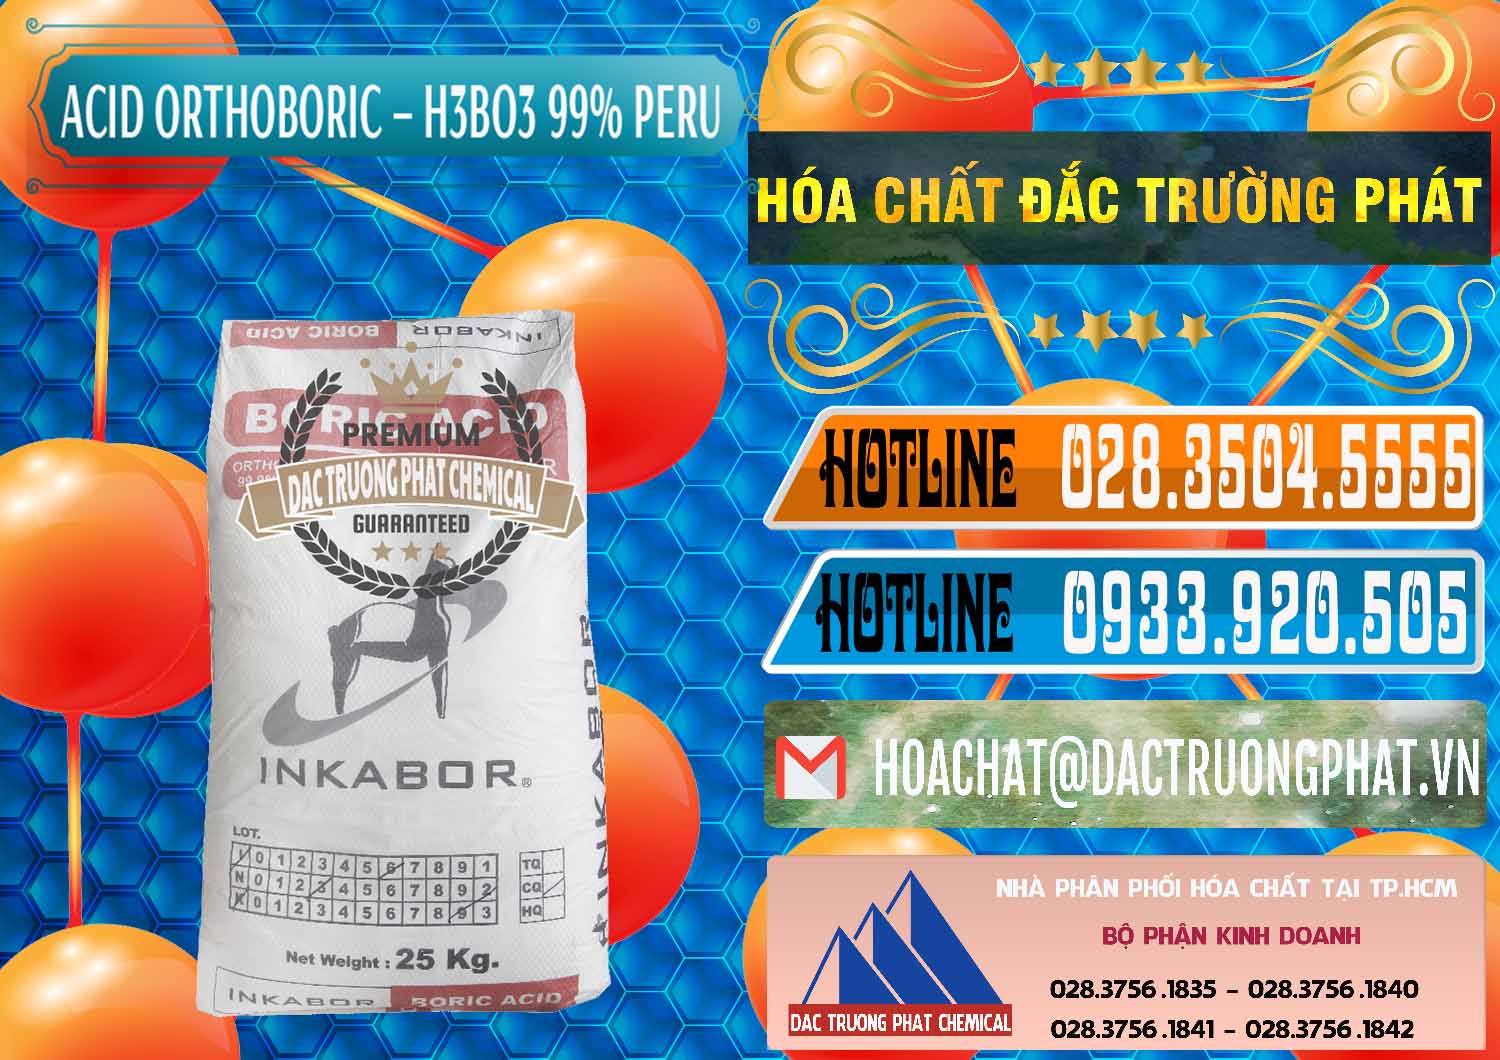 Bán & cung cấp Acid Boric – Axit Boric H3BO3 99% Inkabor Peru - 0280 - Nơi chuyên kinh doanh _ cung cấp hóa chất tại TP.HCM - stmp.net